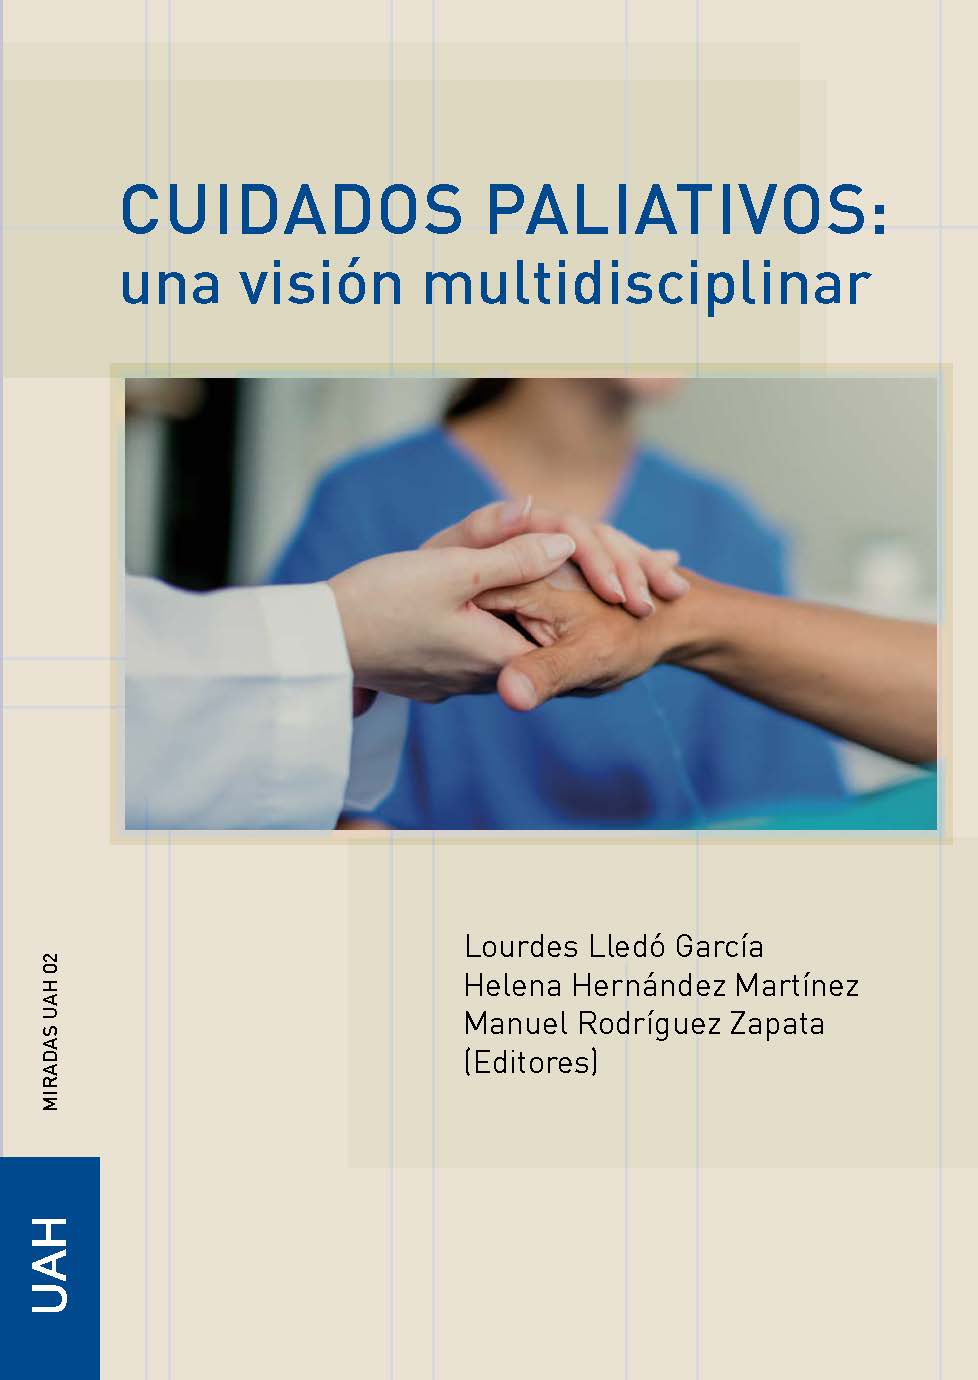 Cuidados Paliativos: una visión multidisciplinar